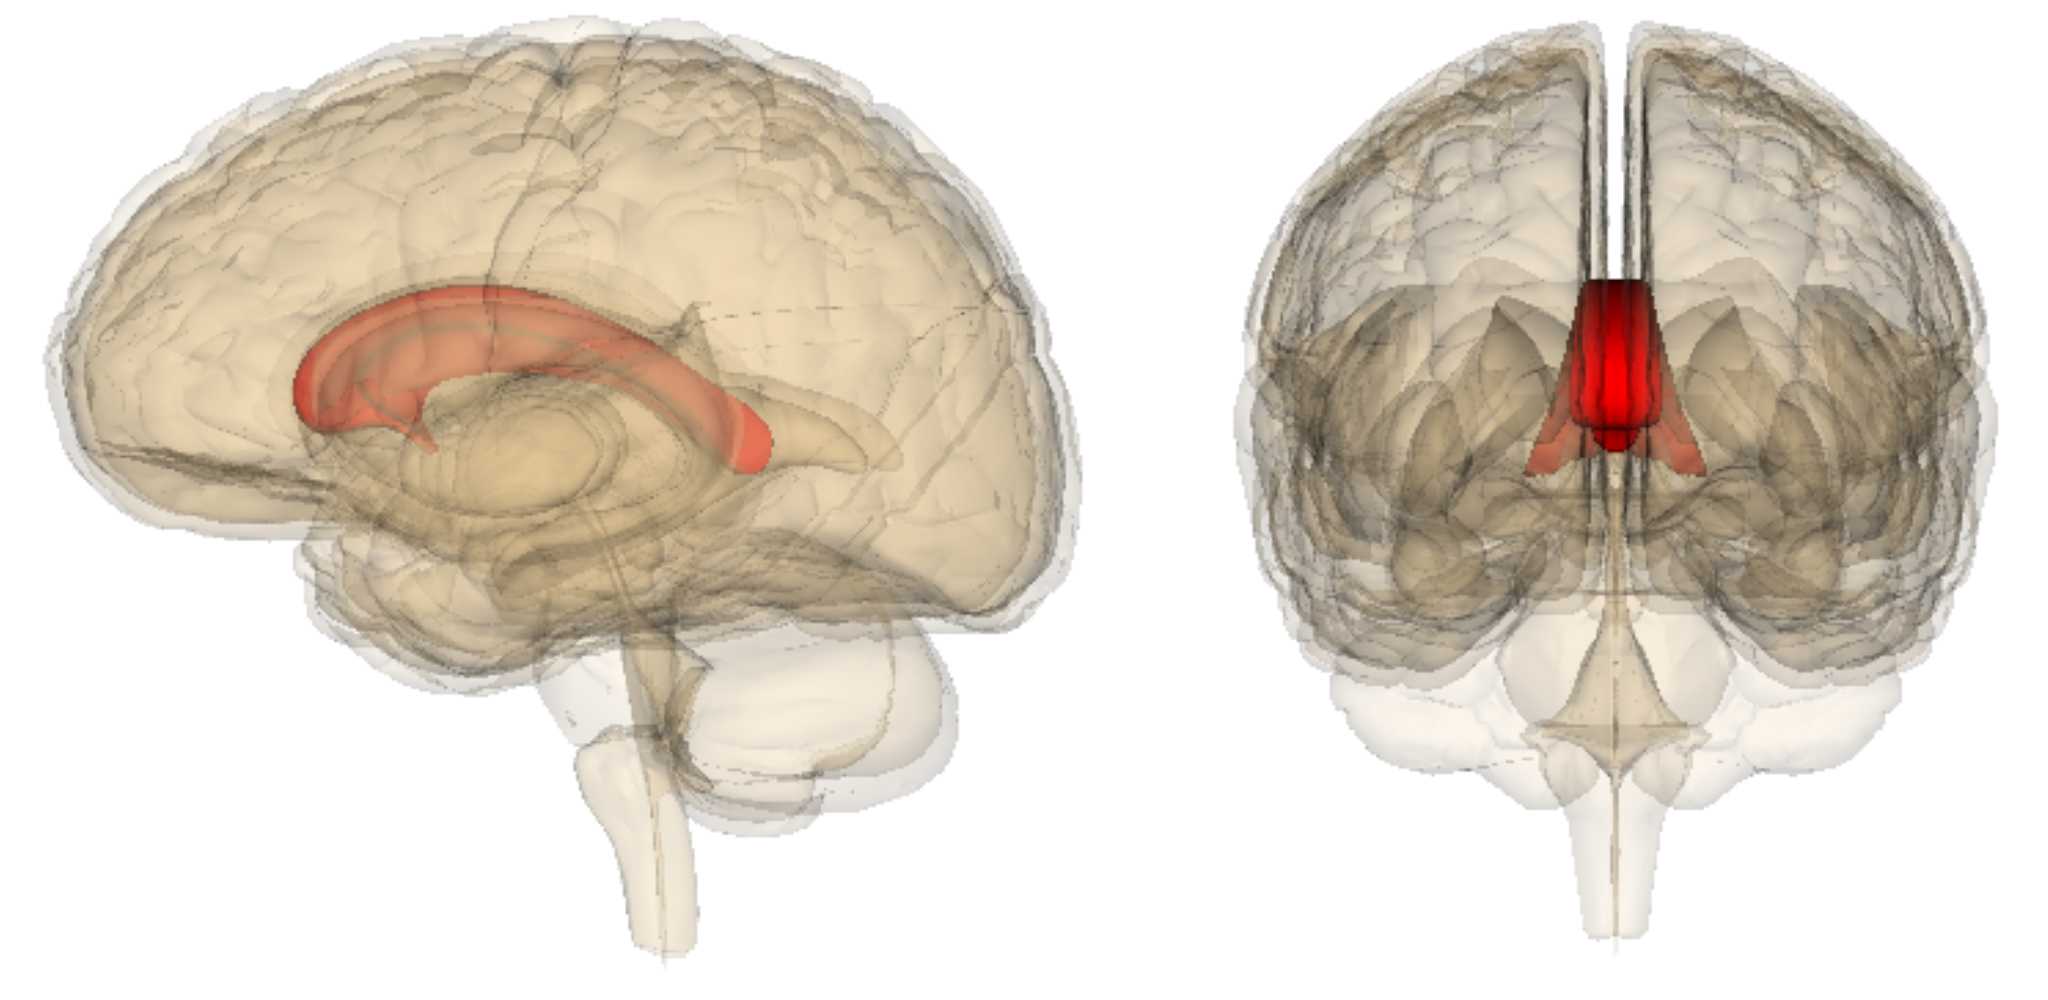 Мозолистое тело связали с межполушарной асимметрией языка